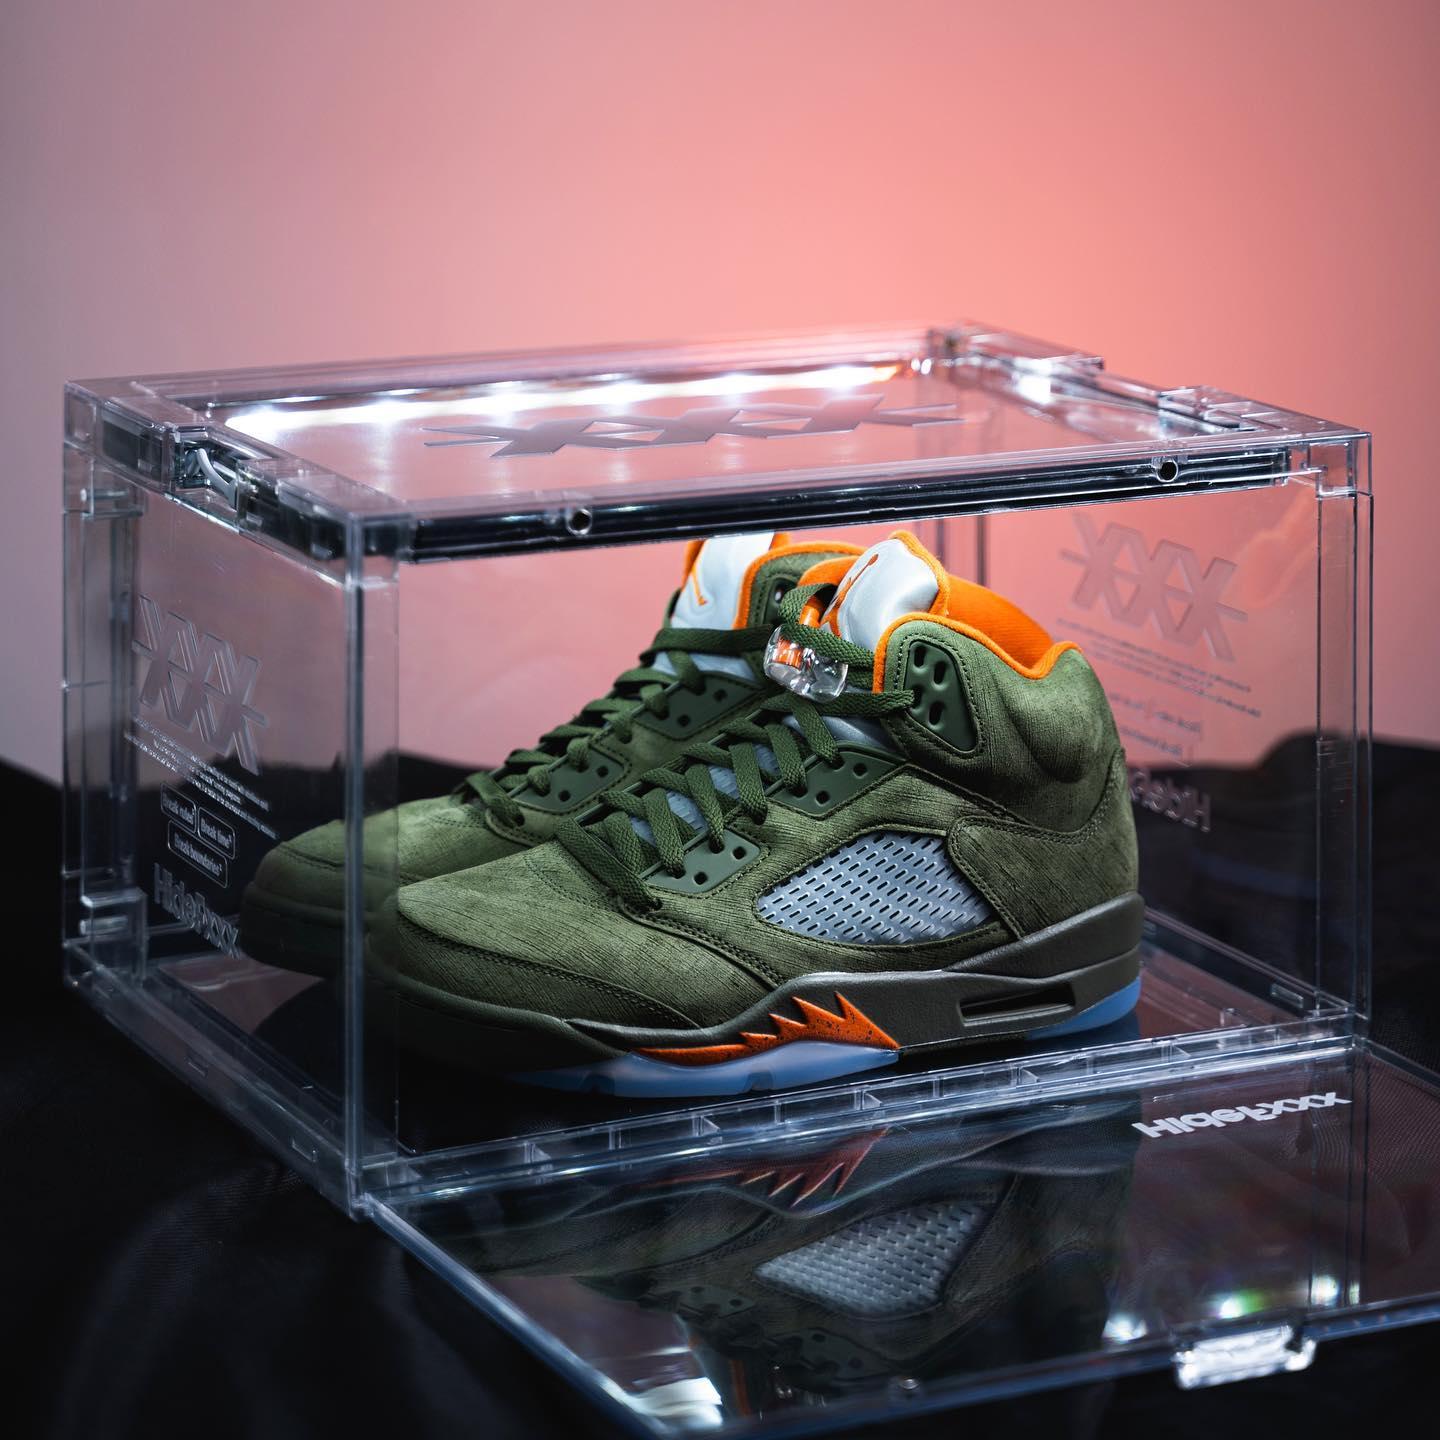 Nike Air Jordan 5 'Olive' in sneaker box